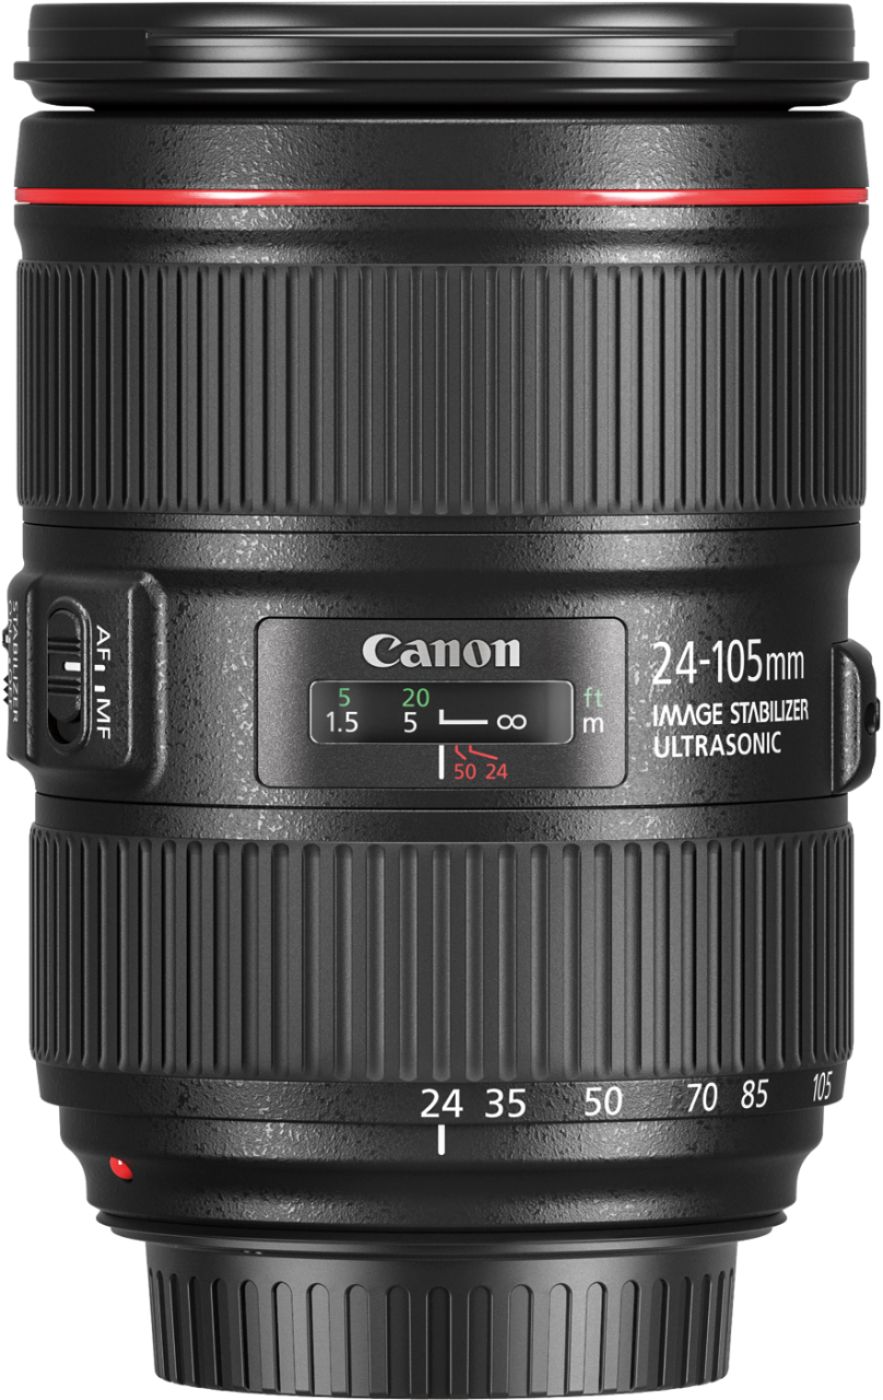 EF24-105mm F4L IS II USM Zoom Lens for Canon EOS DSLR Cameras 